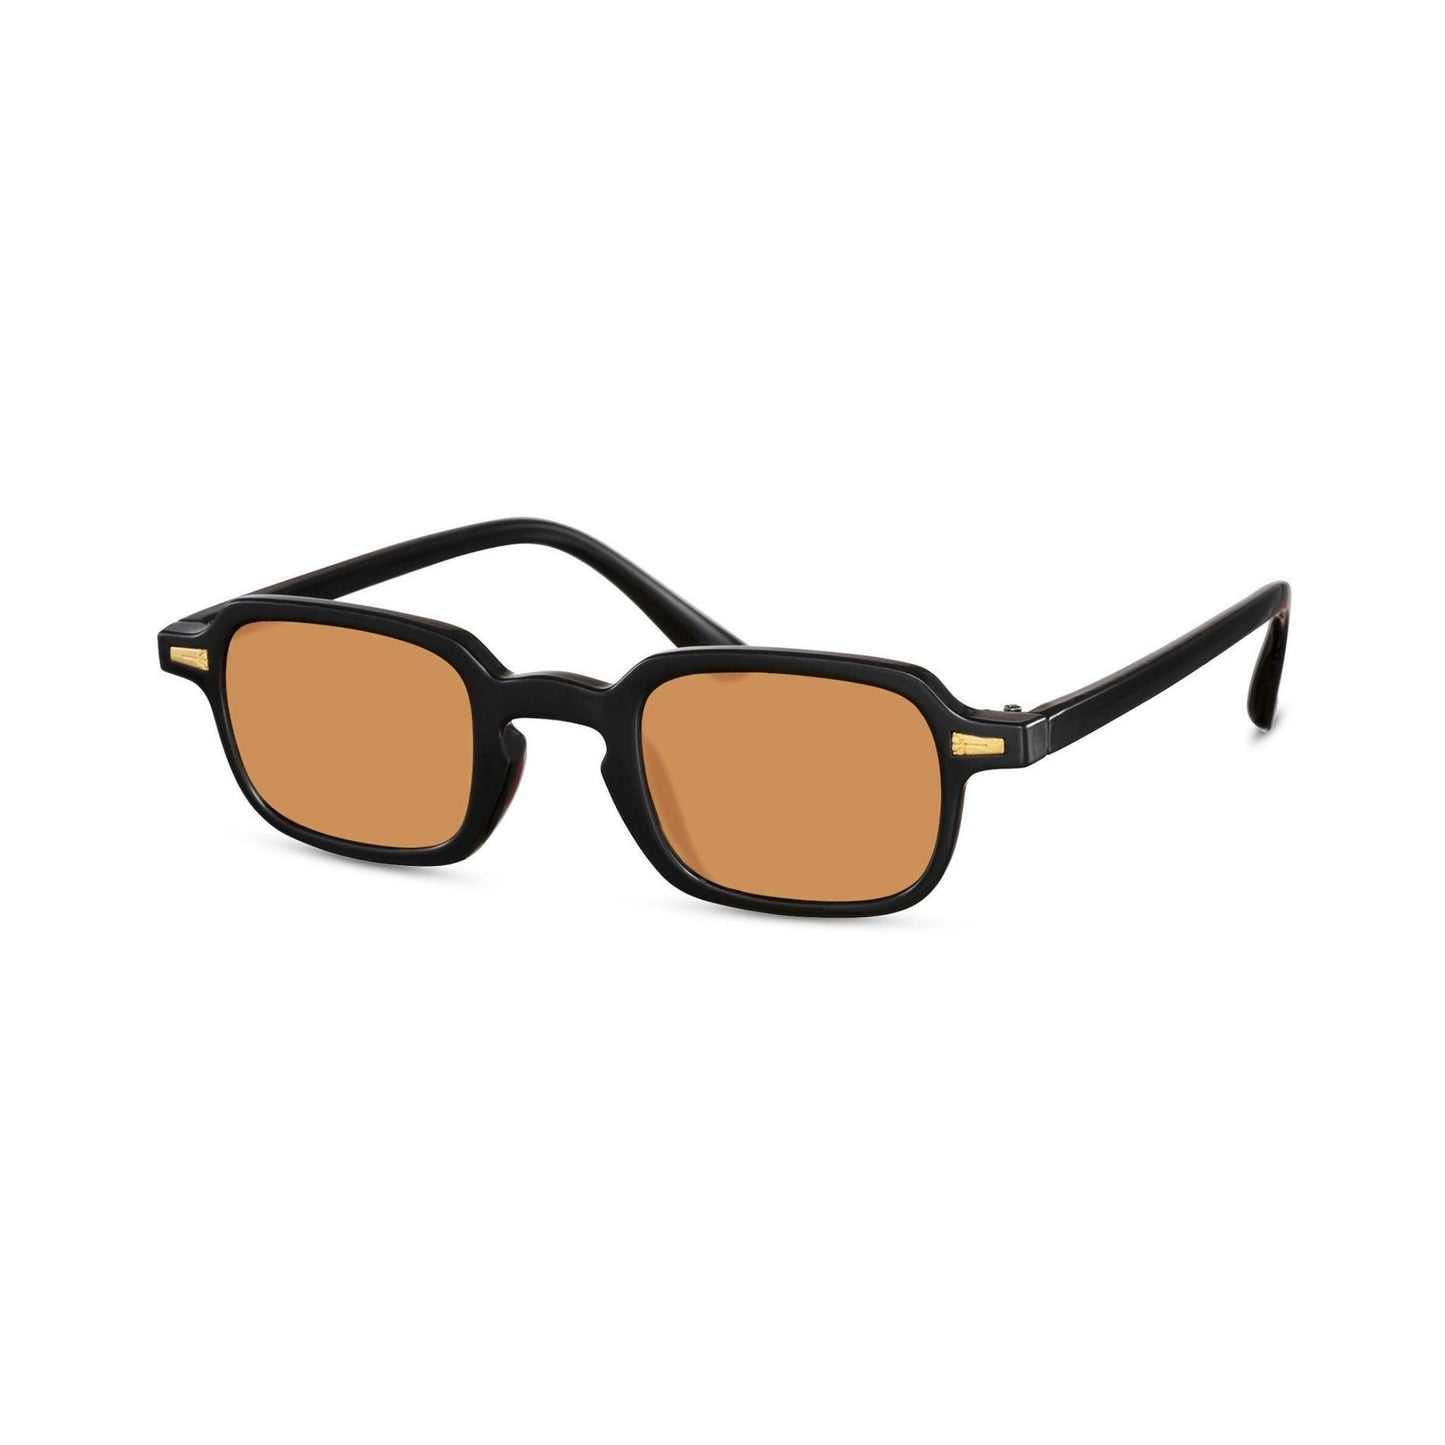 Τετράγωνα Γυαλιά ηλίου Luminous της Exposure Sunglasses με προστασία UV400 με μαύρο σκελετό και πορτοκαλί φακό.Πλάγια προβολή